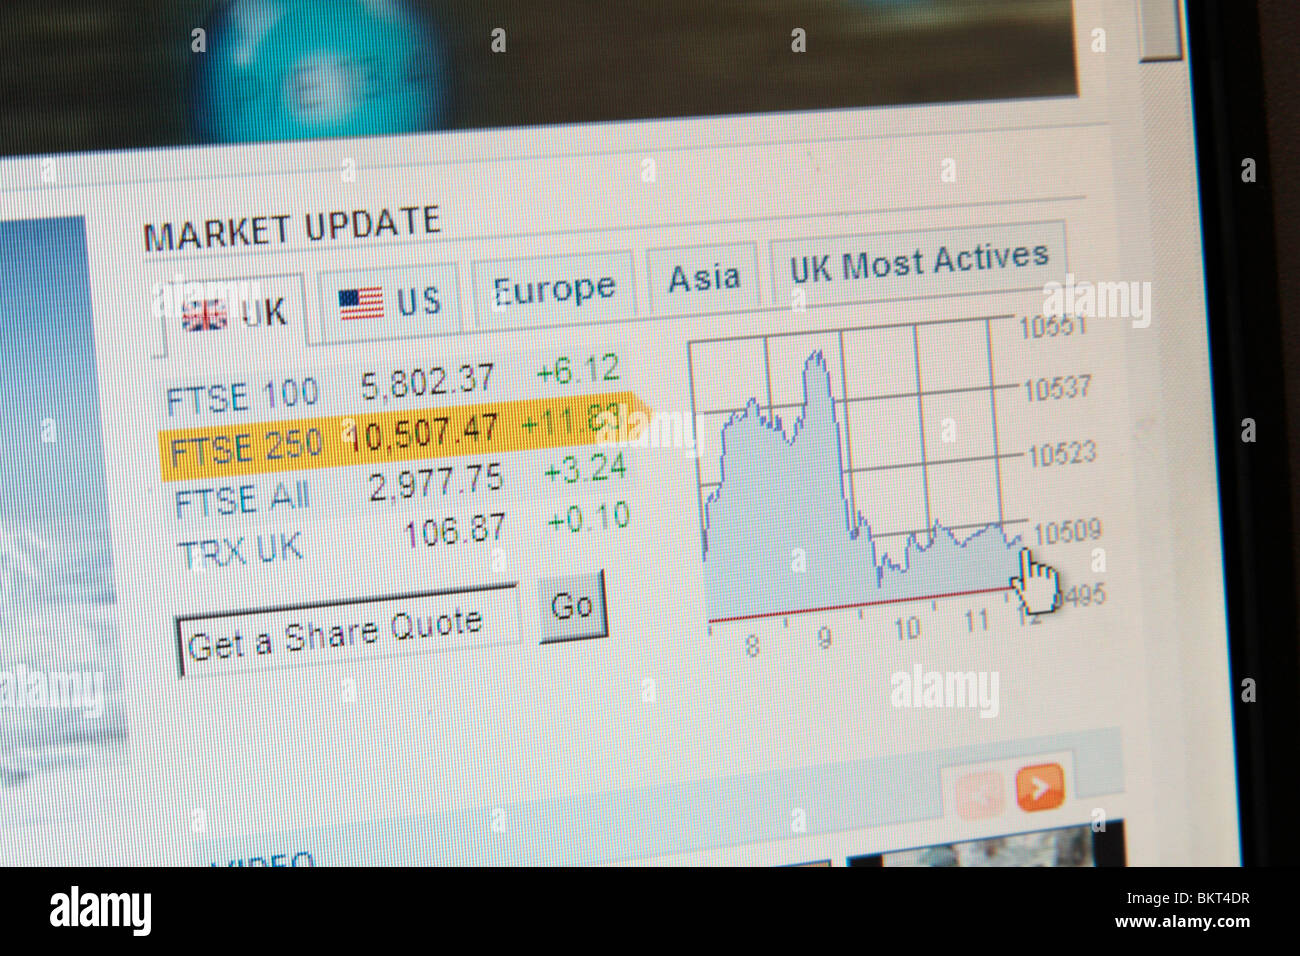 Una schermata che mostra l'aggiornamento di mercato dei principali mercati del Regno Unito sulla Reuters news web site. Aprile 2010 Foto Stock